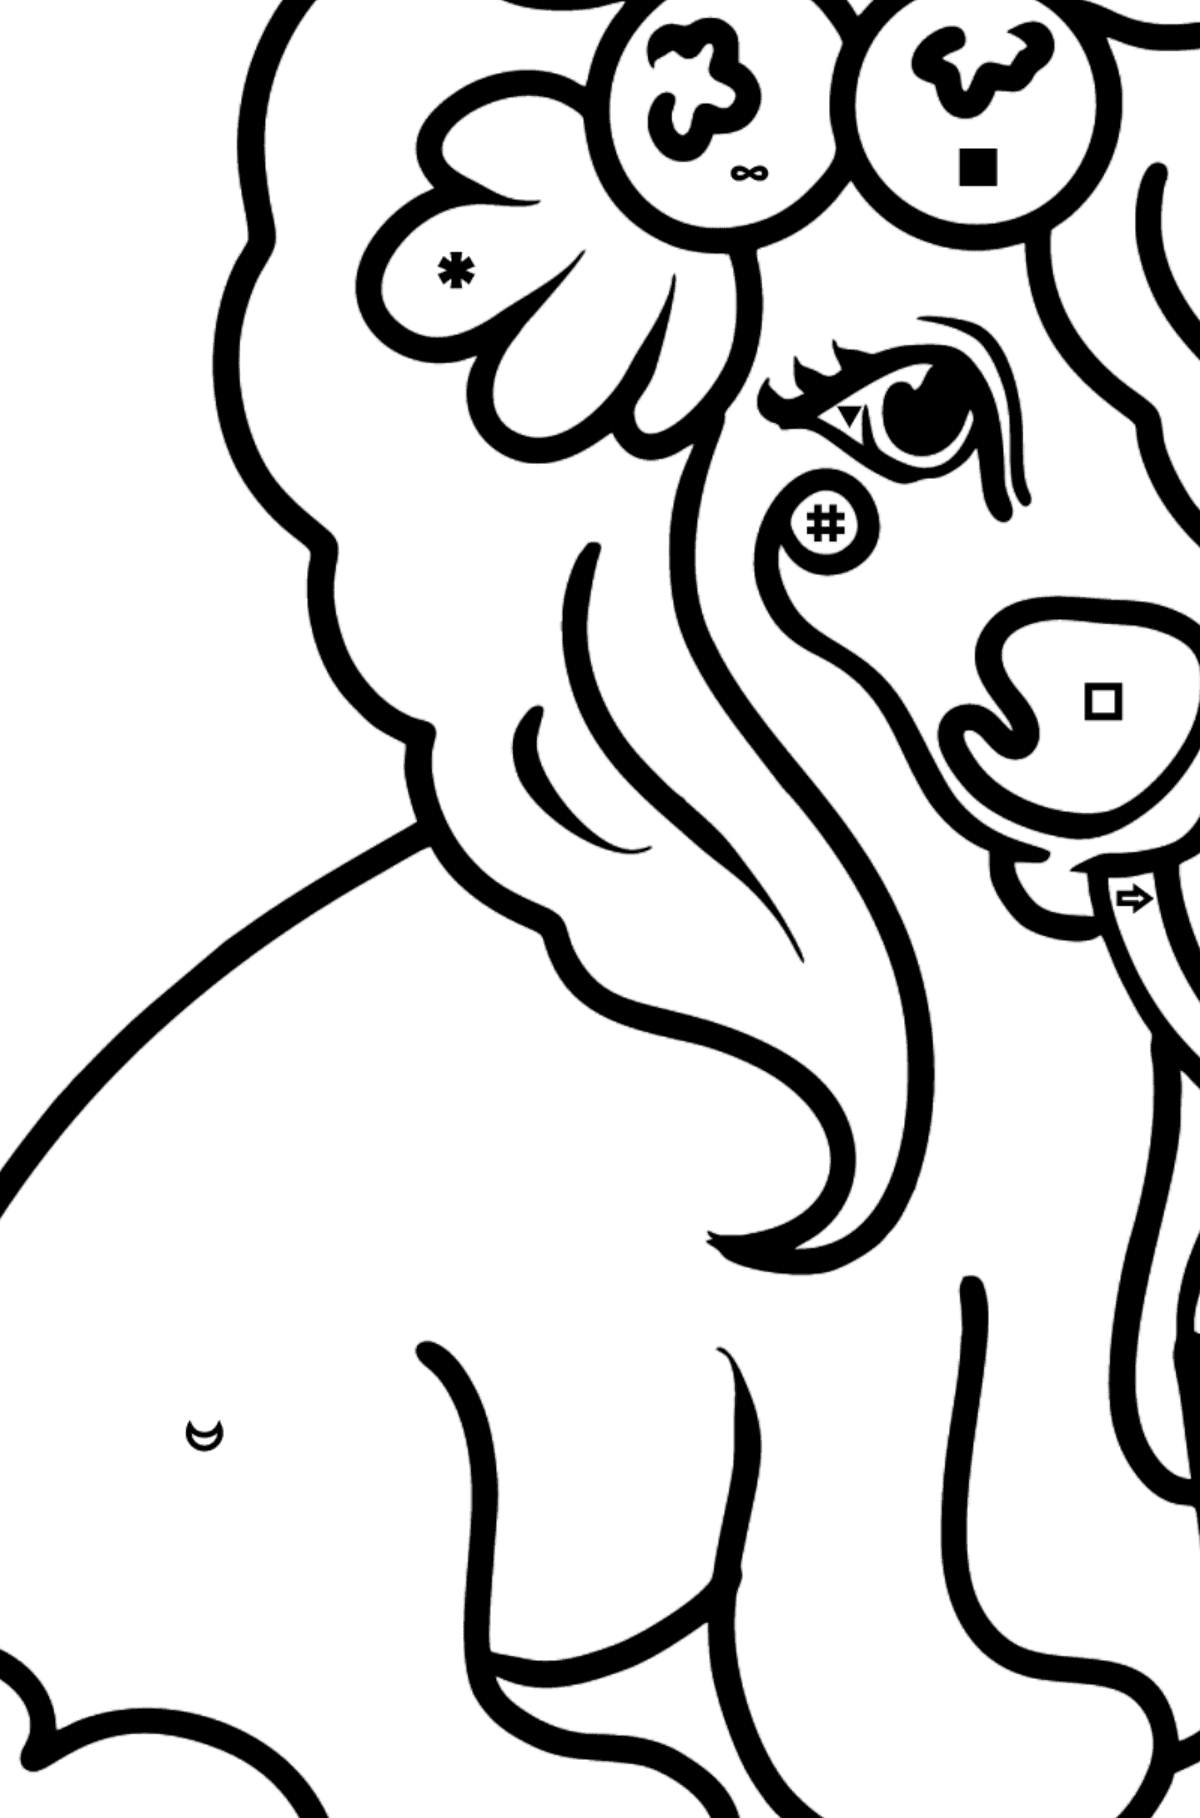 Kolorowanka Holly Pony - Kolorowanie według symboli i figur geometrycznych dla dzieci